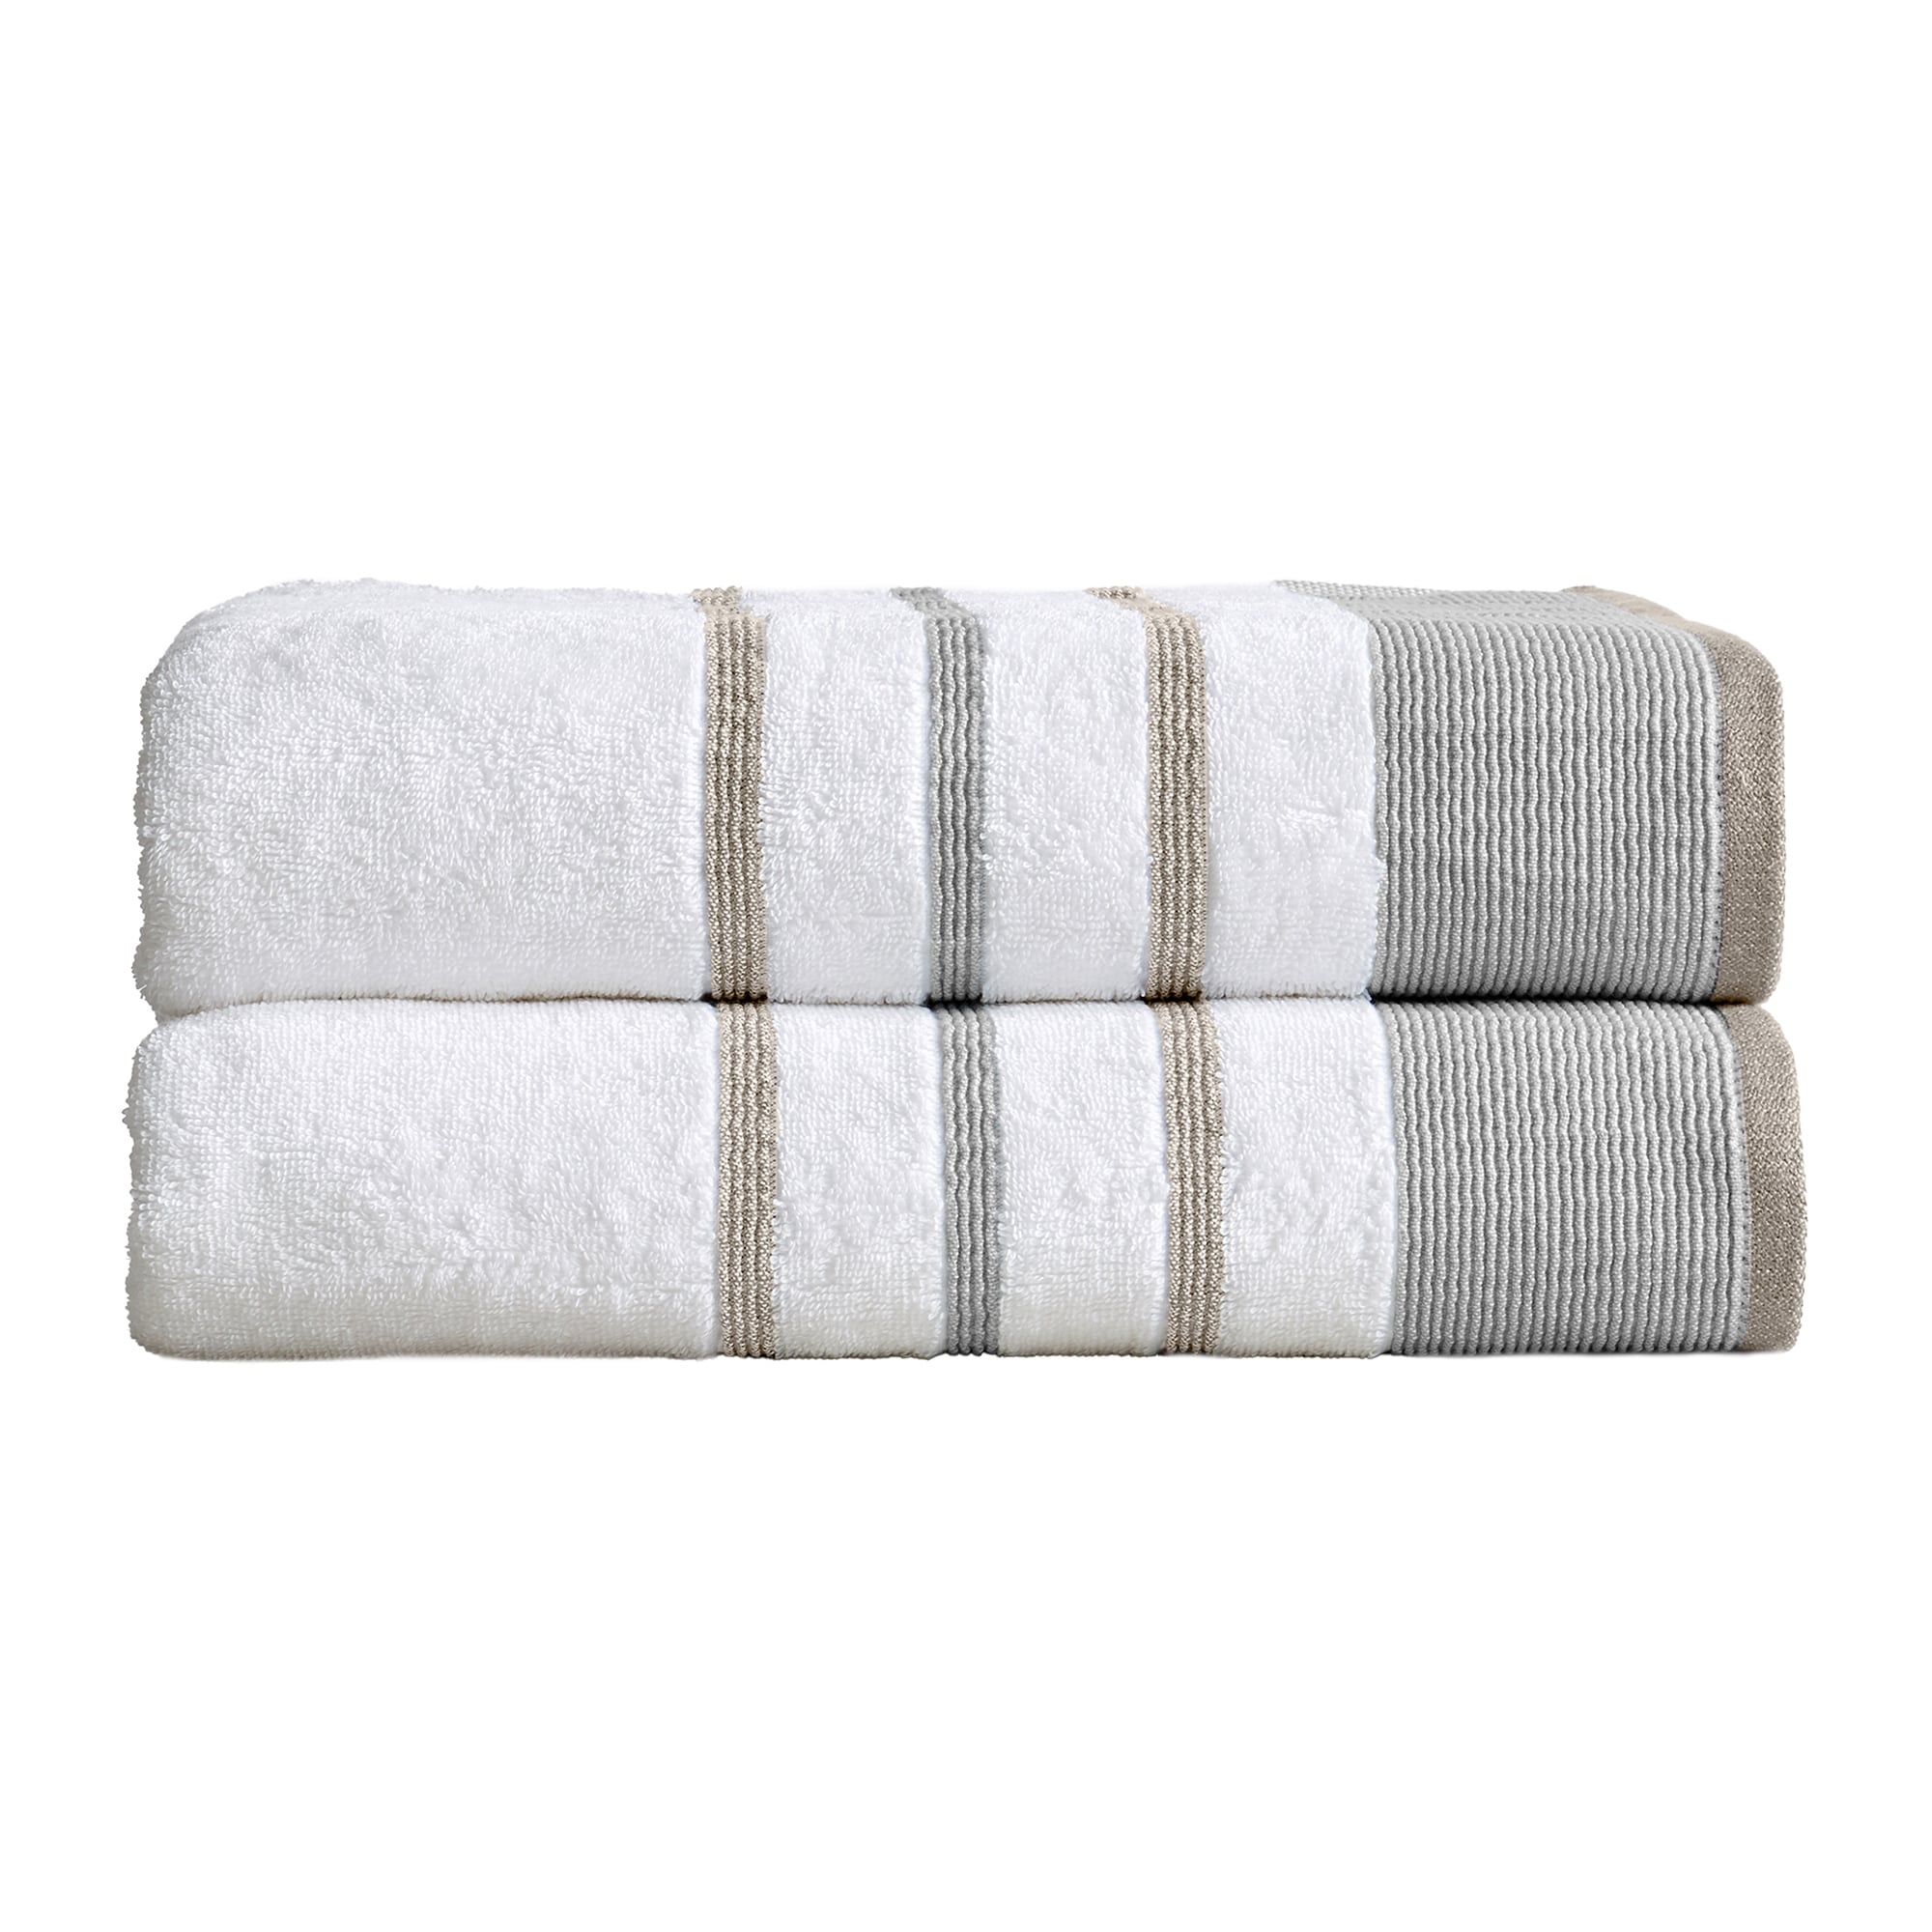 Striped Heavy Weight Linen Bath Towels Various Colours: Towel Set, Bath  Towel, Body Linen Towels. European Linen, Super Absorbent. Huckaback 